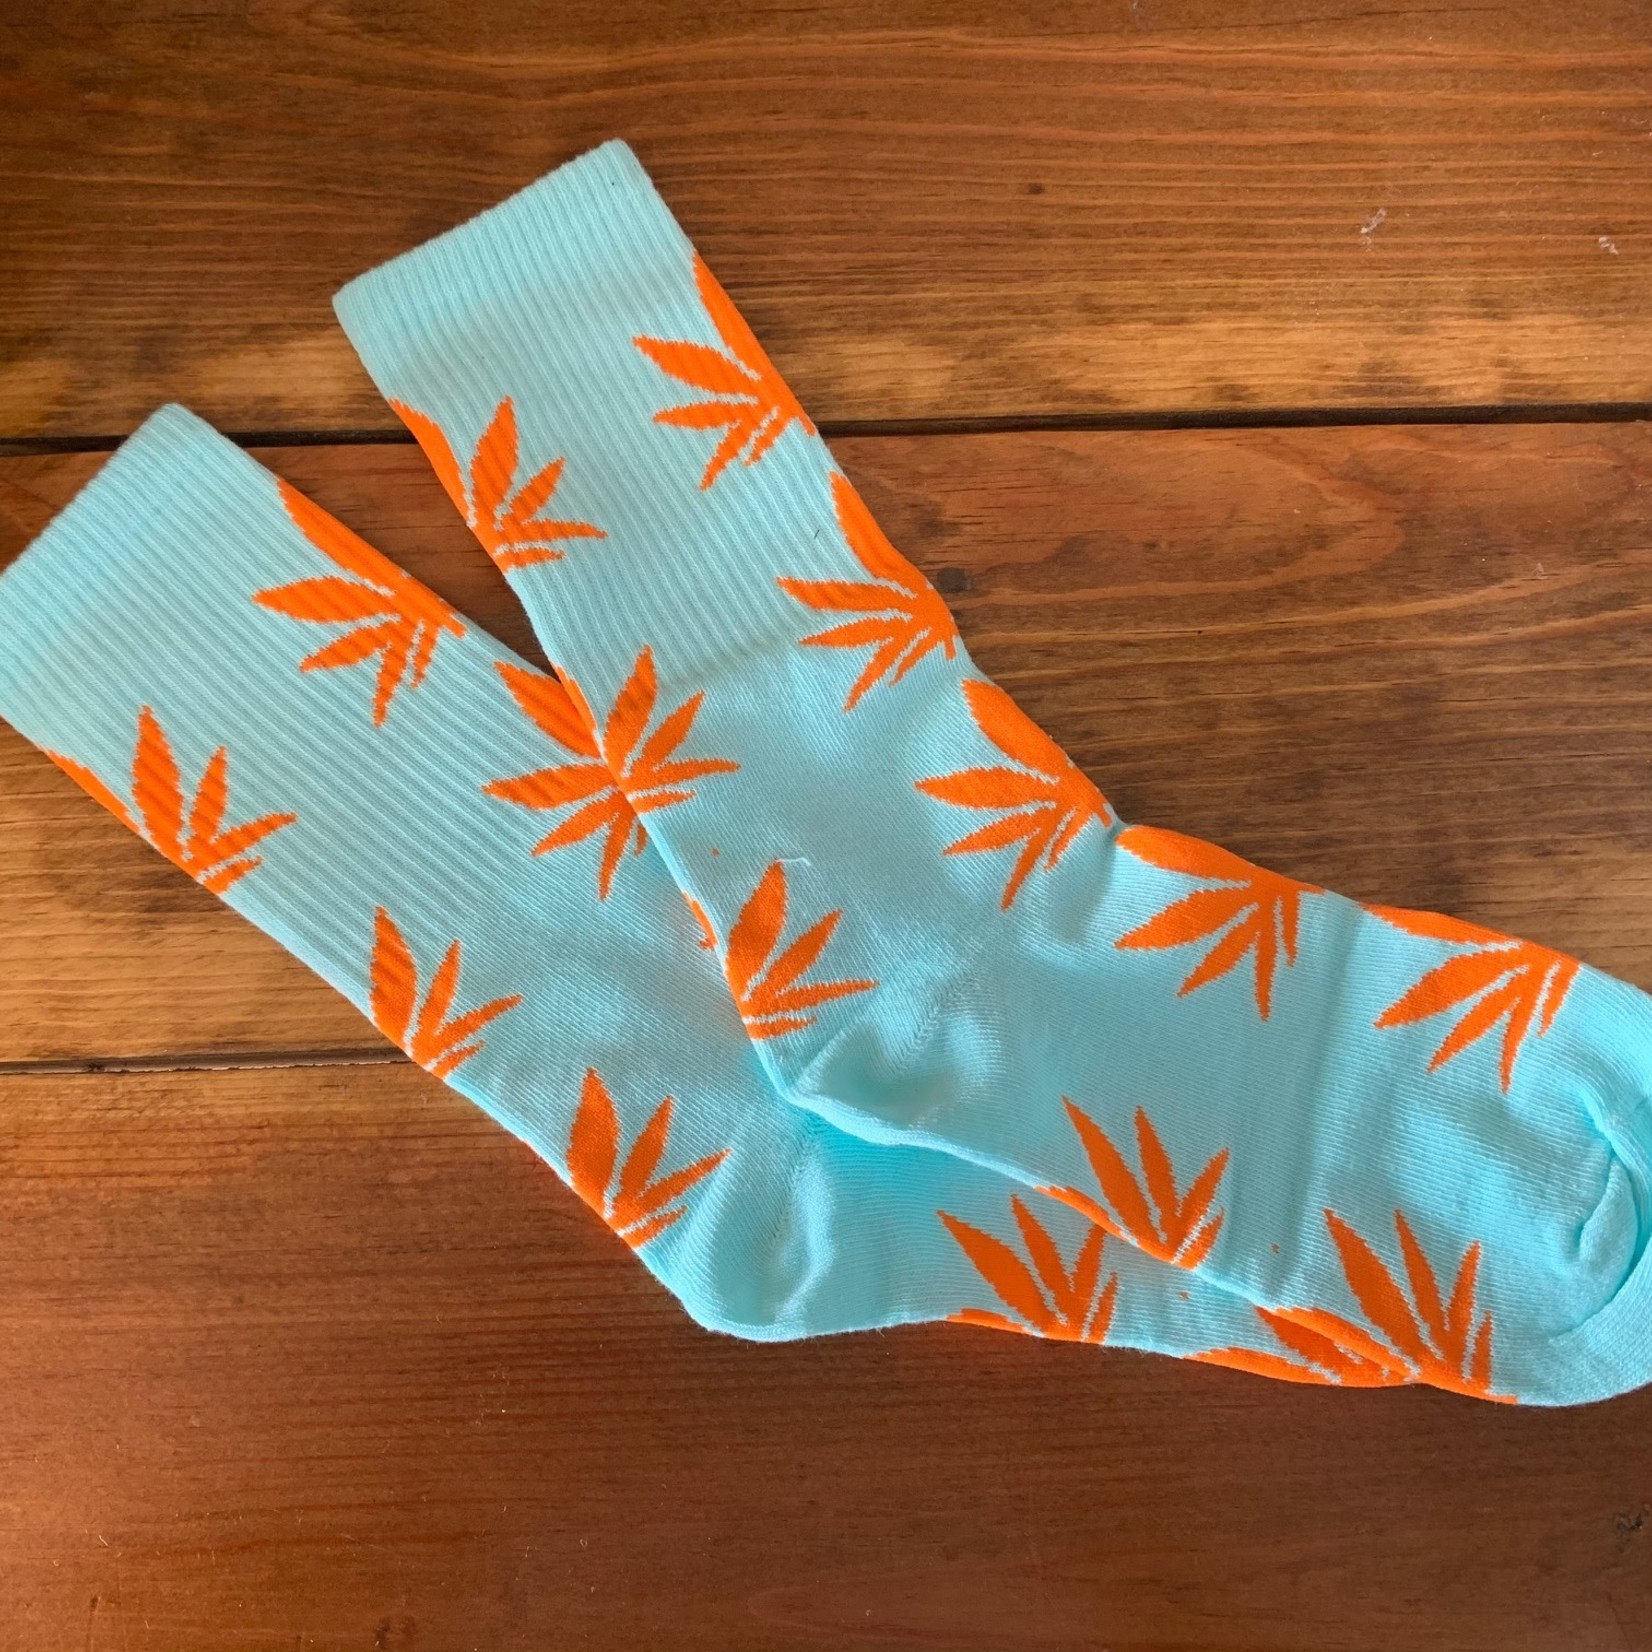 Cannabis Leaf Socks